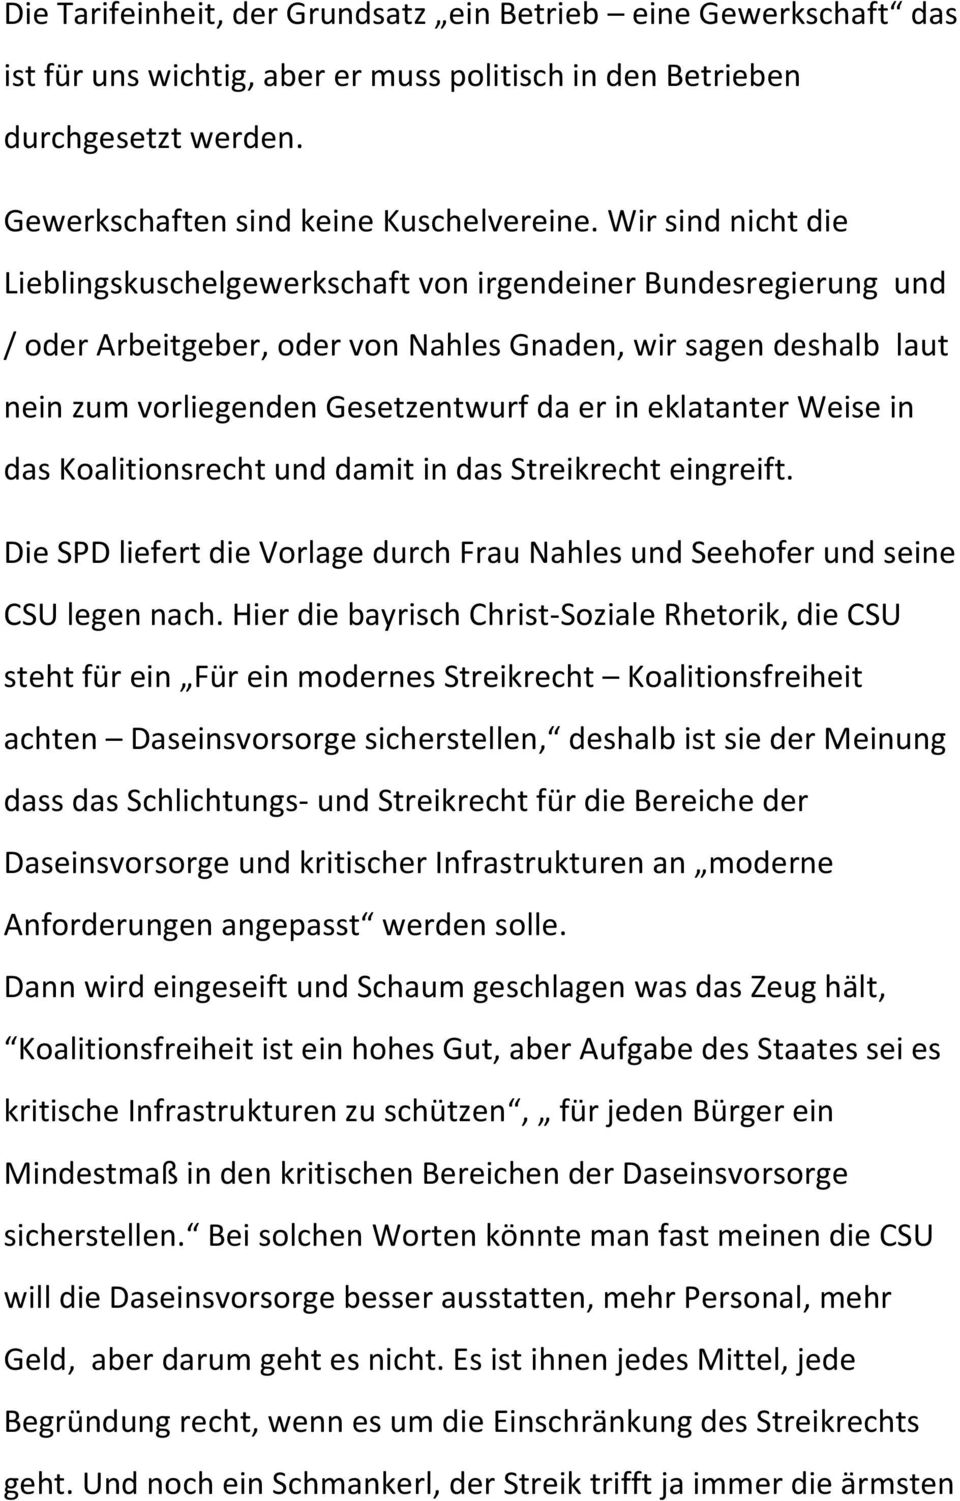 eklatanter Weise in das Koalitionsrecht und damit in das Streikrecht eingreift. Die SPD liefert die Vorlage durch Frau Nahles und Seehofer und seine CSU legen nach.